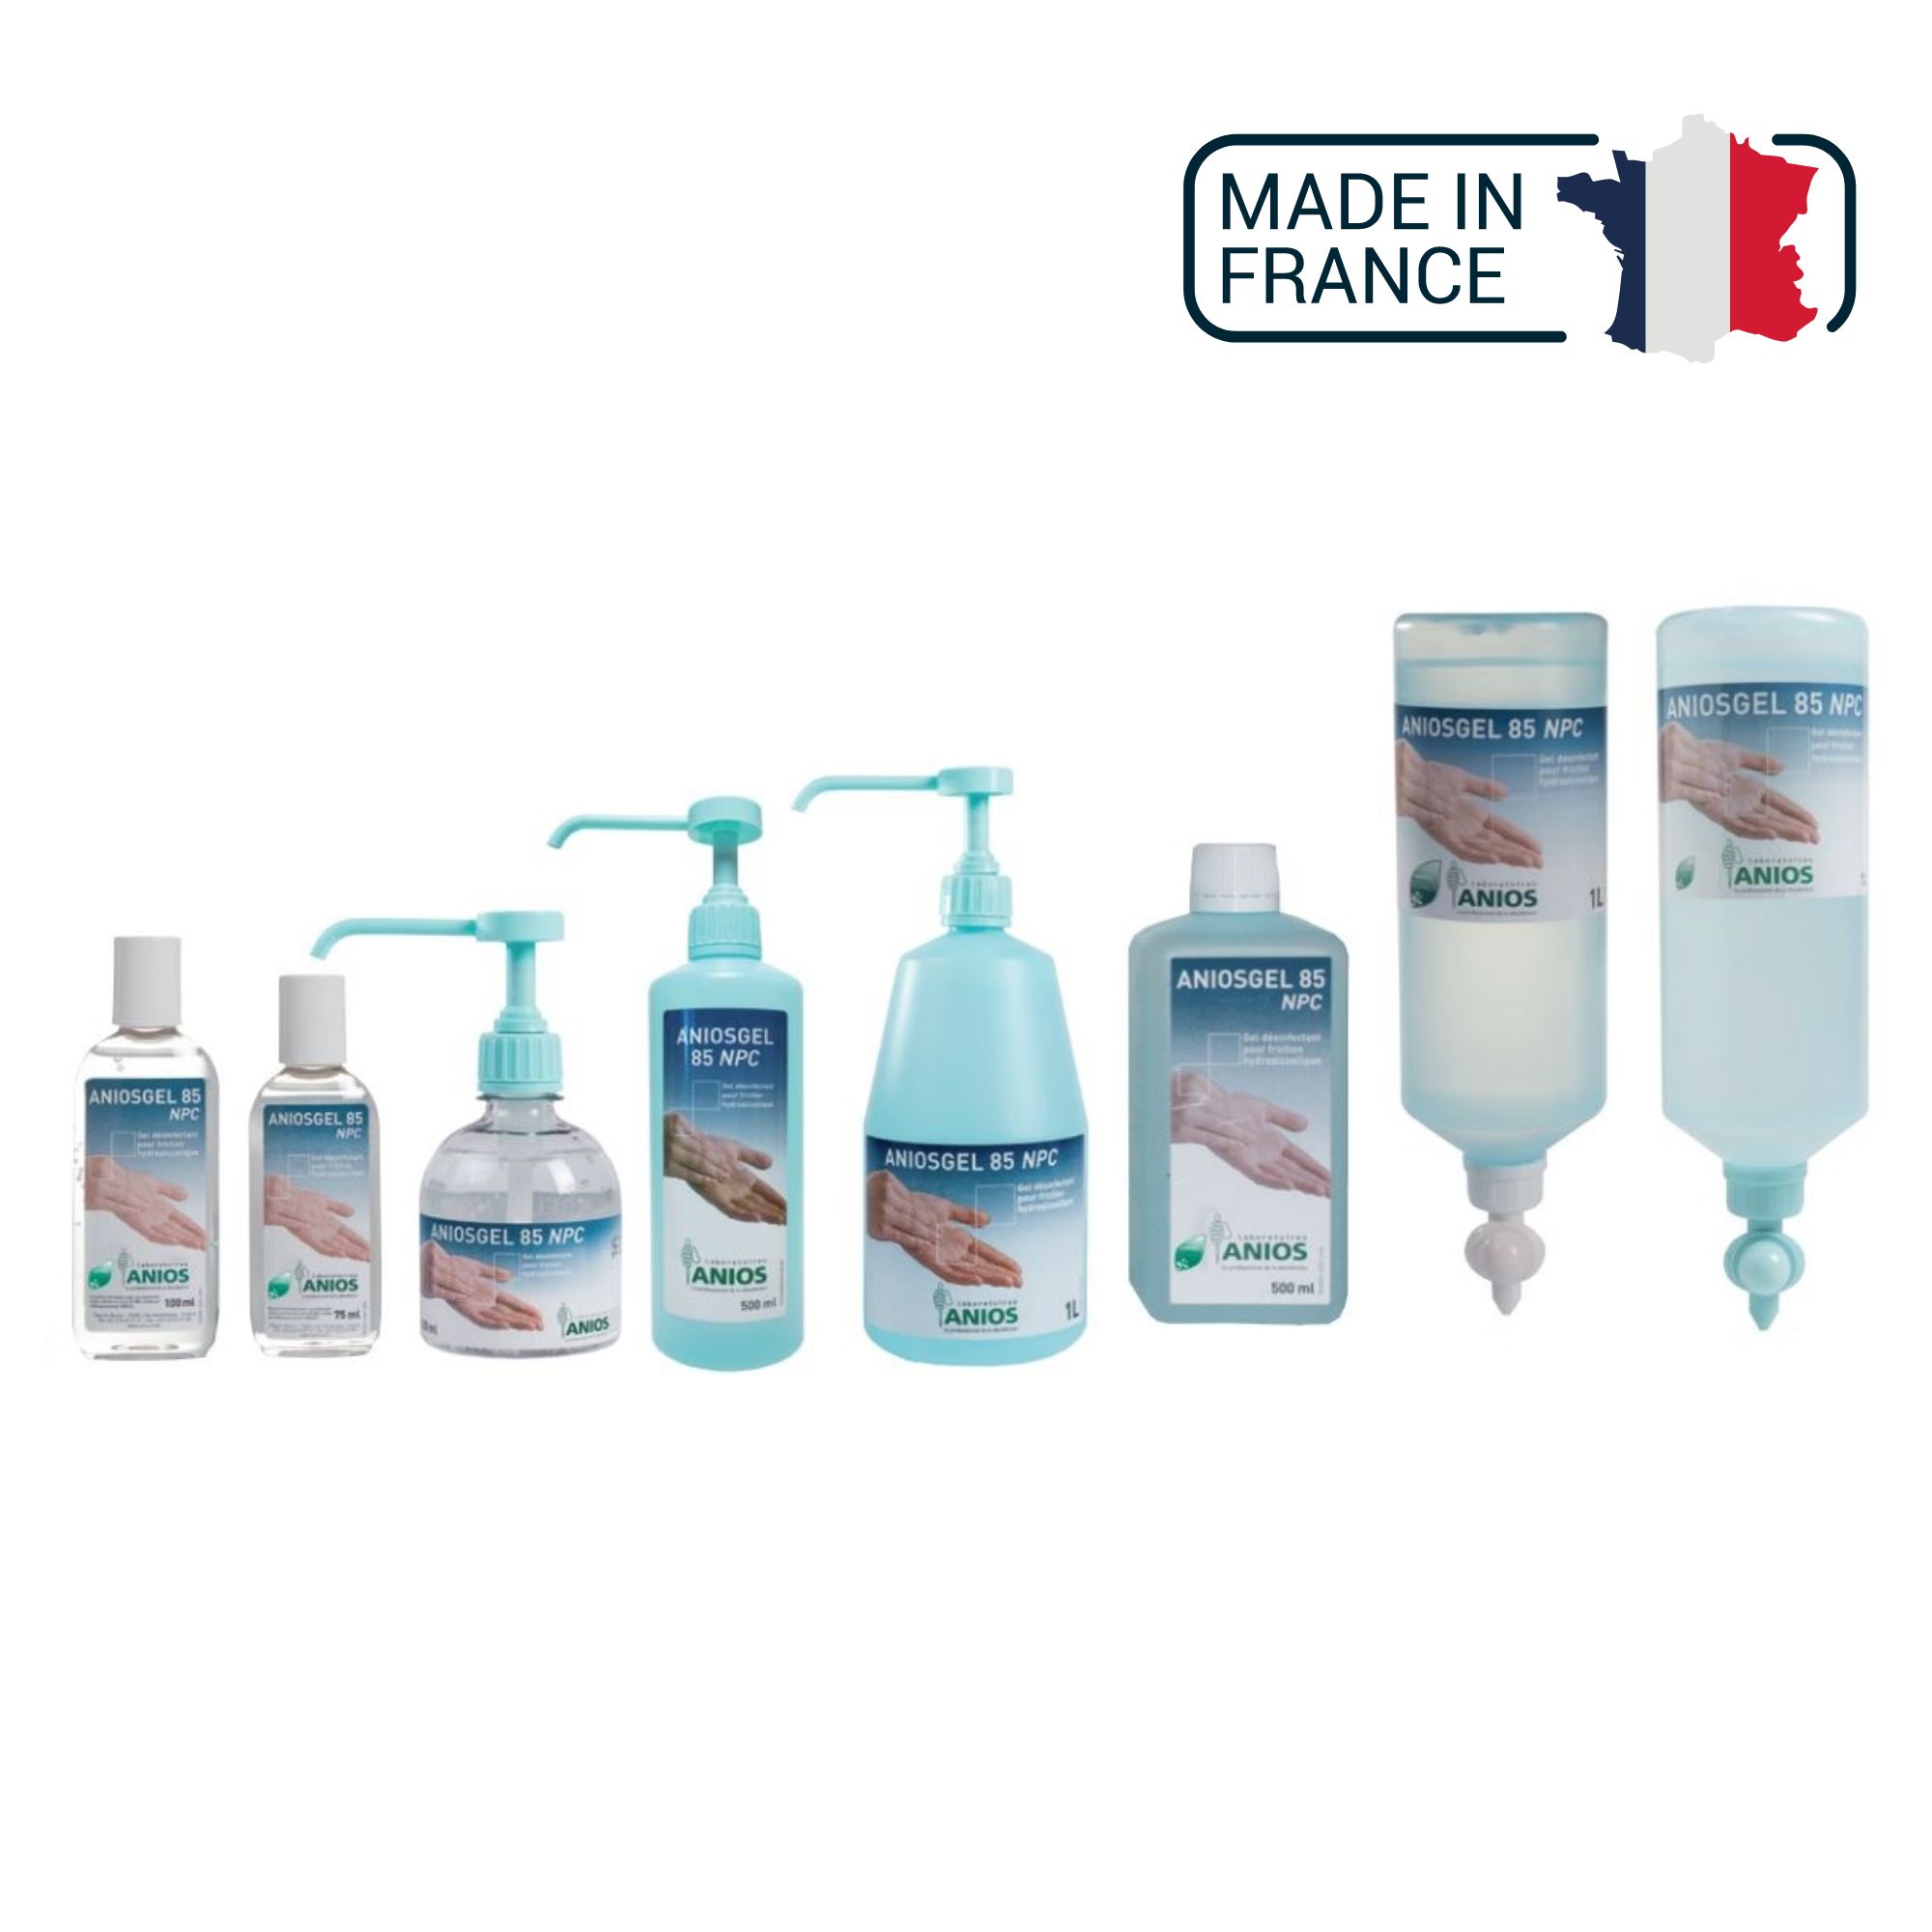 https://www.my-medical.fr/70214-large_default/aniosgel-85-npc-gel-desinfectant-pour-friction-hydroalcoolique-anios.jpg